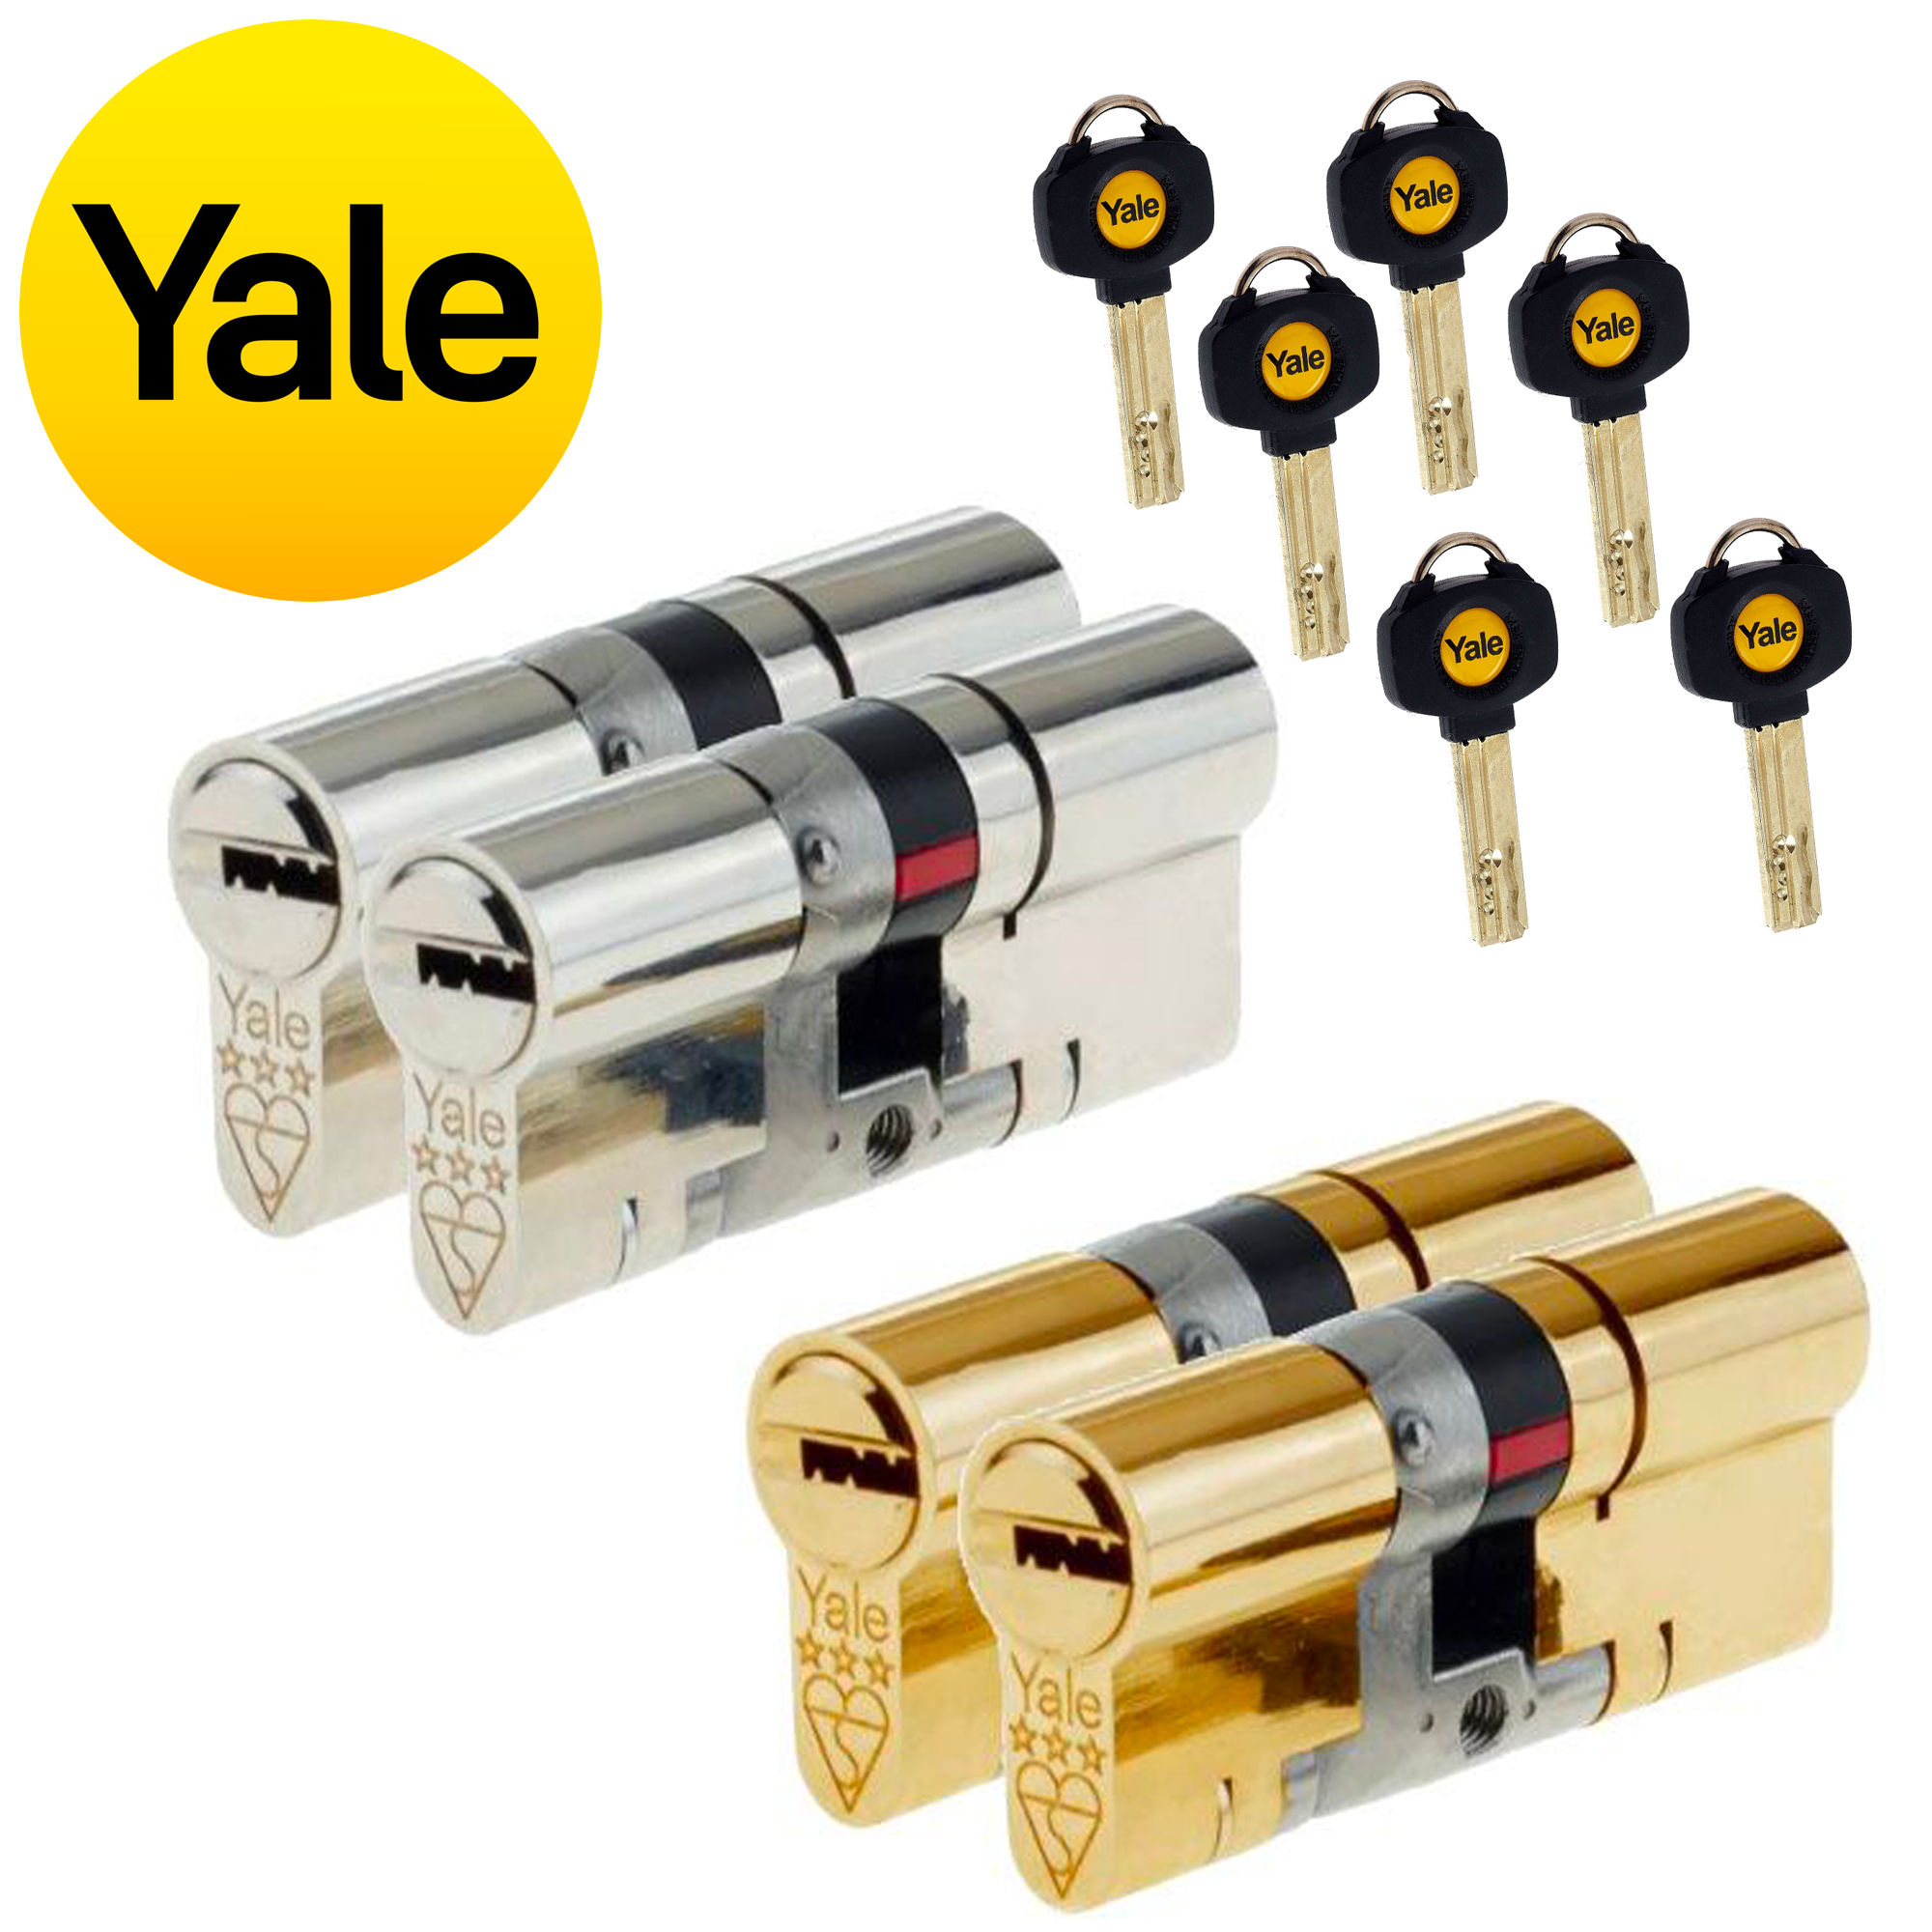 Yale 3* Keyed Pair Yale Platinum Keyed Alike Euro Cylinder UPVC Door Lock Anti Snap 3 Star